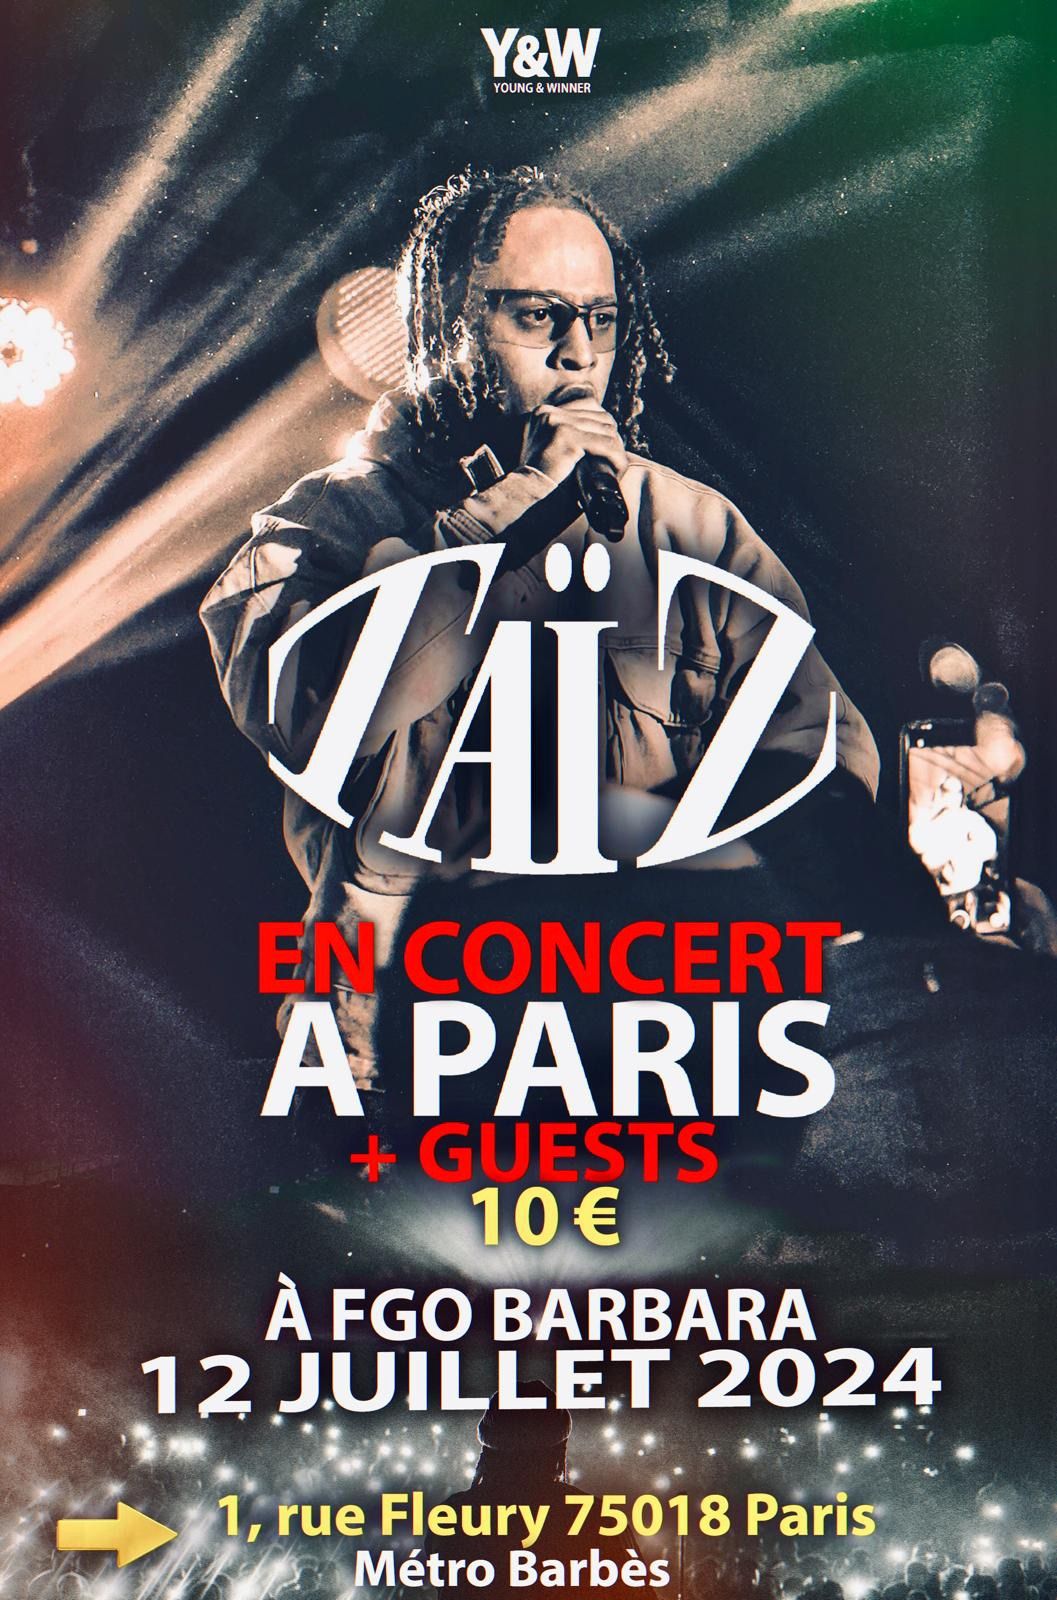 Ta\u00efZ en concert \u00e0 Paris